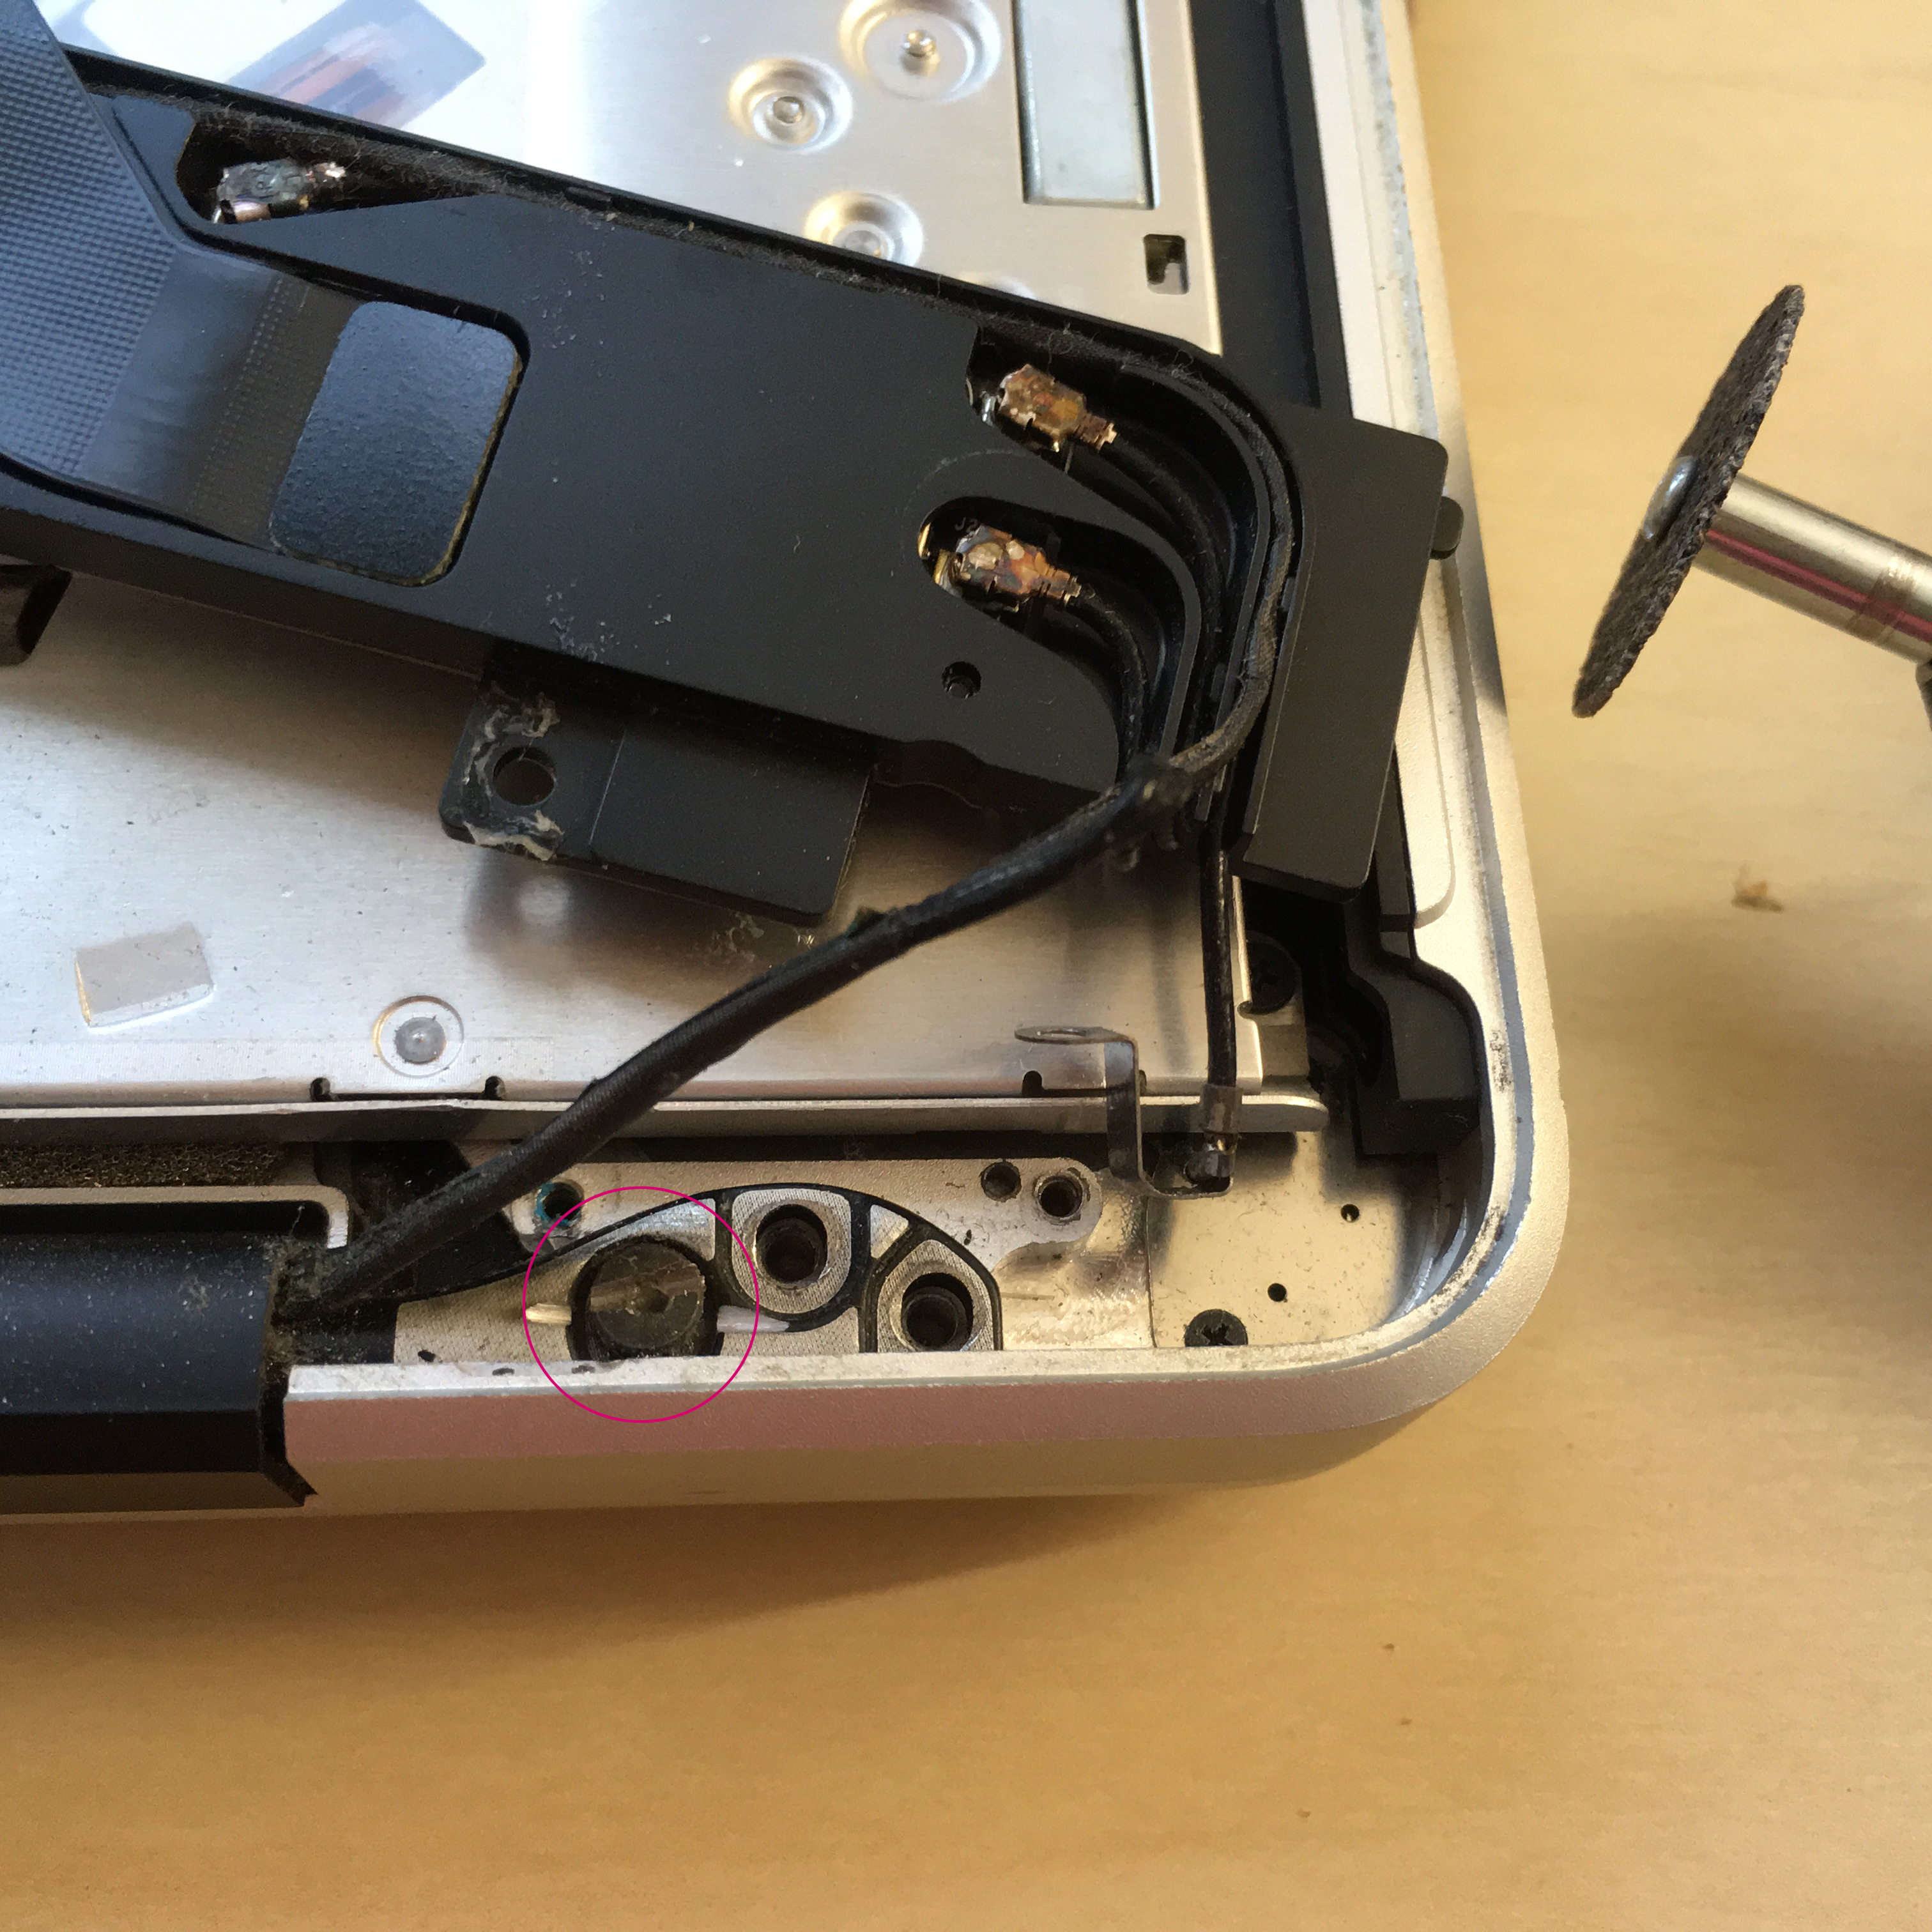 Macbook repairs Macbook LCD replacement